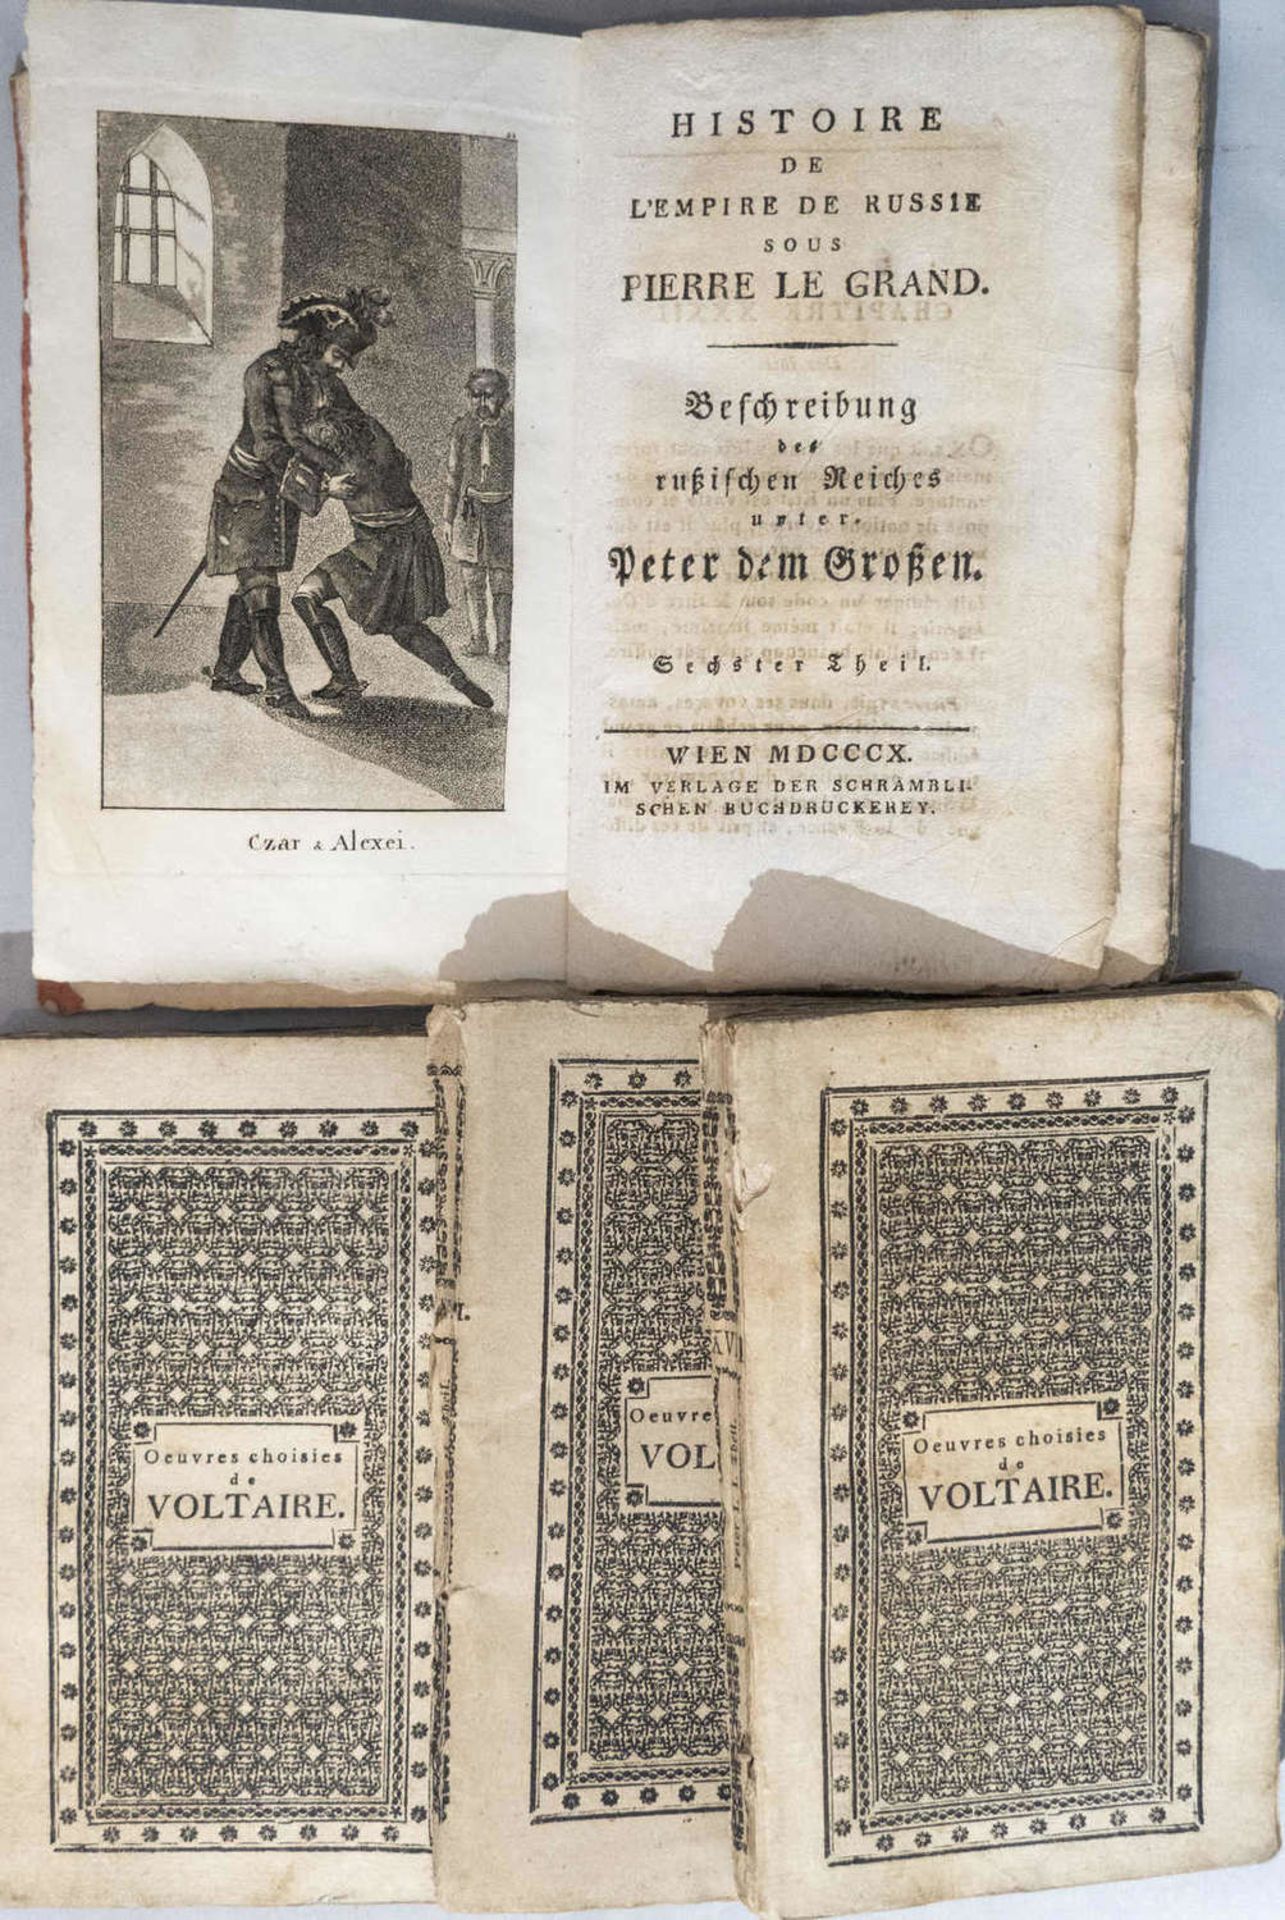 Oeuvres Choisies des Voltaire, Voltaire´s vorzügliche Schriften. XVIII. Band, XIX. Band, XXIII.